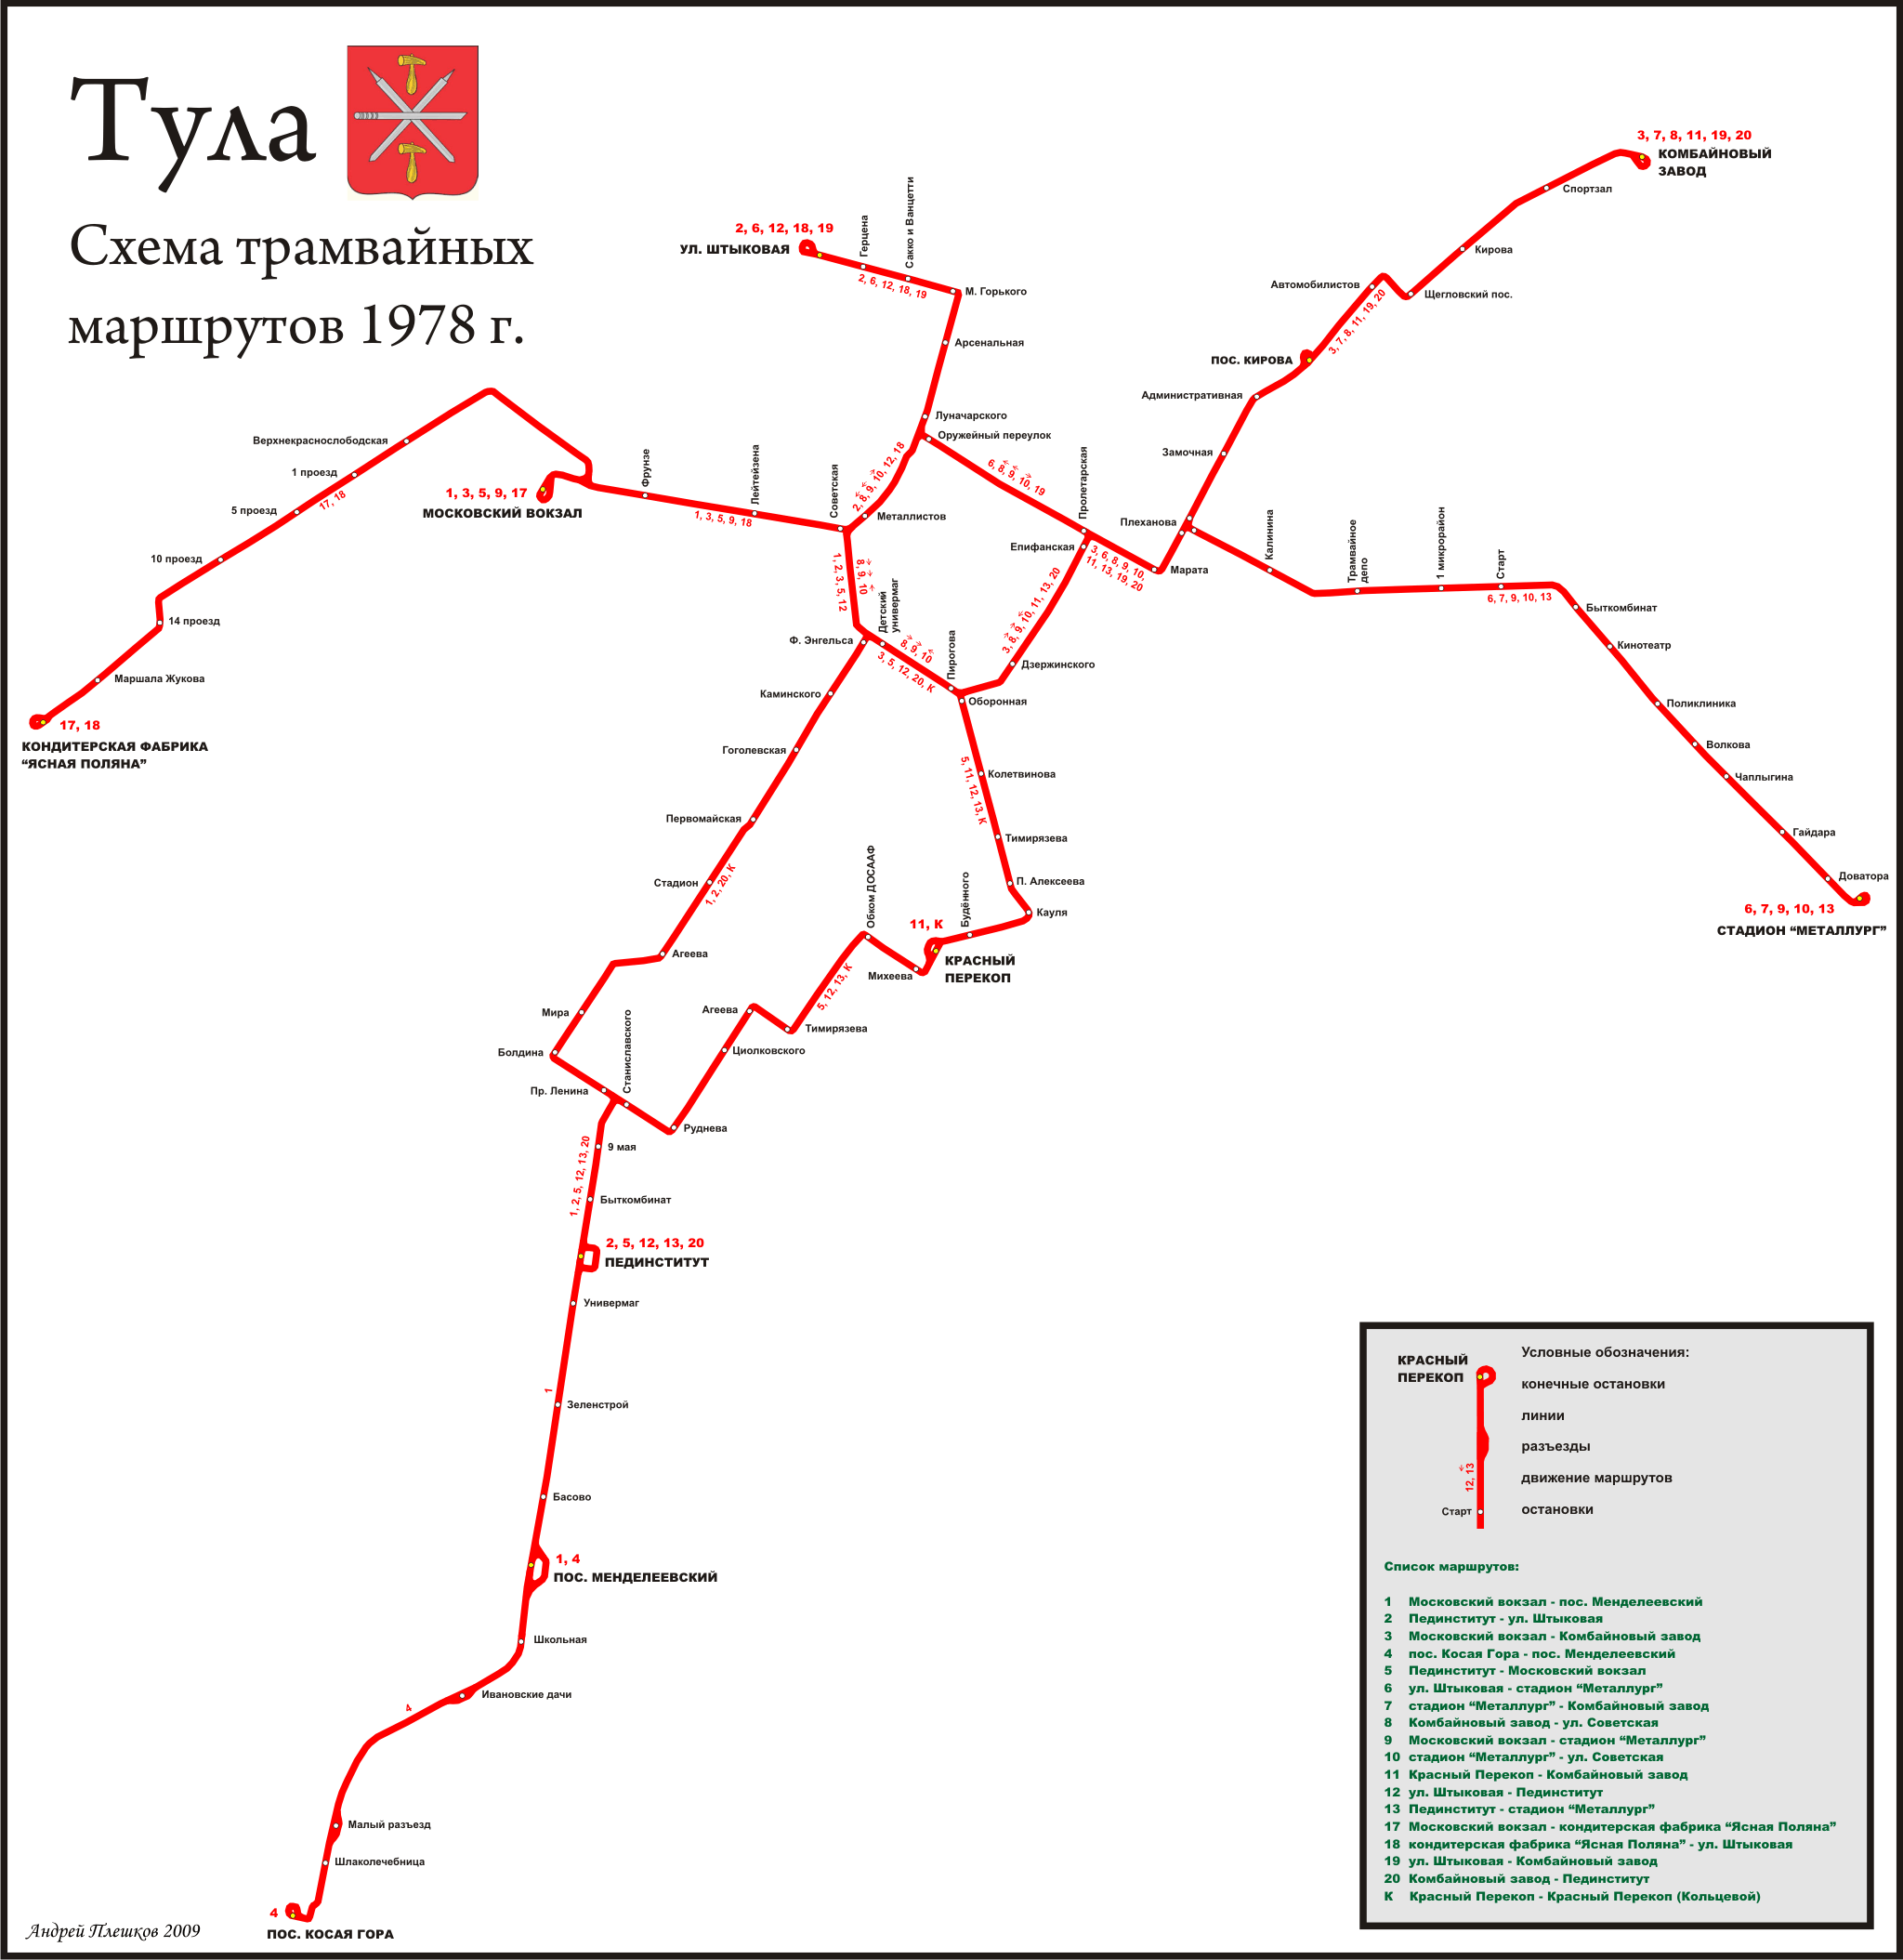 Tula — Maps